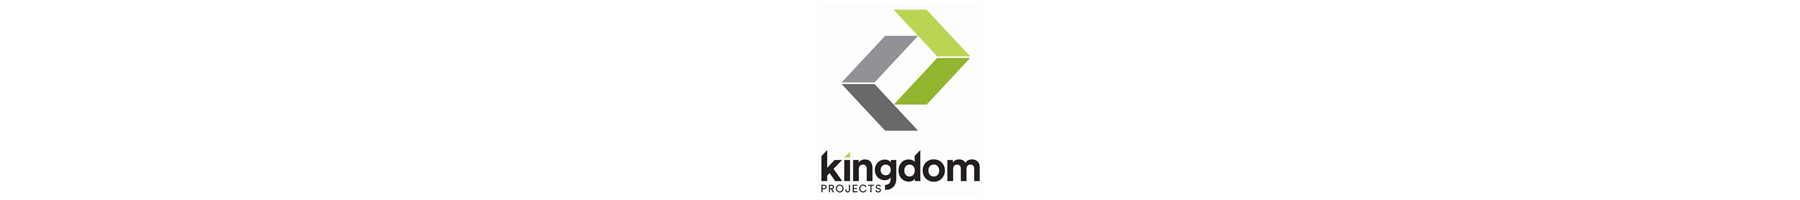 Kingdom Projects 